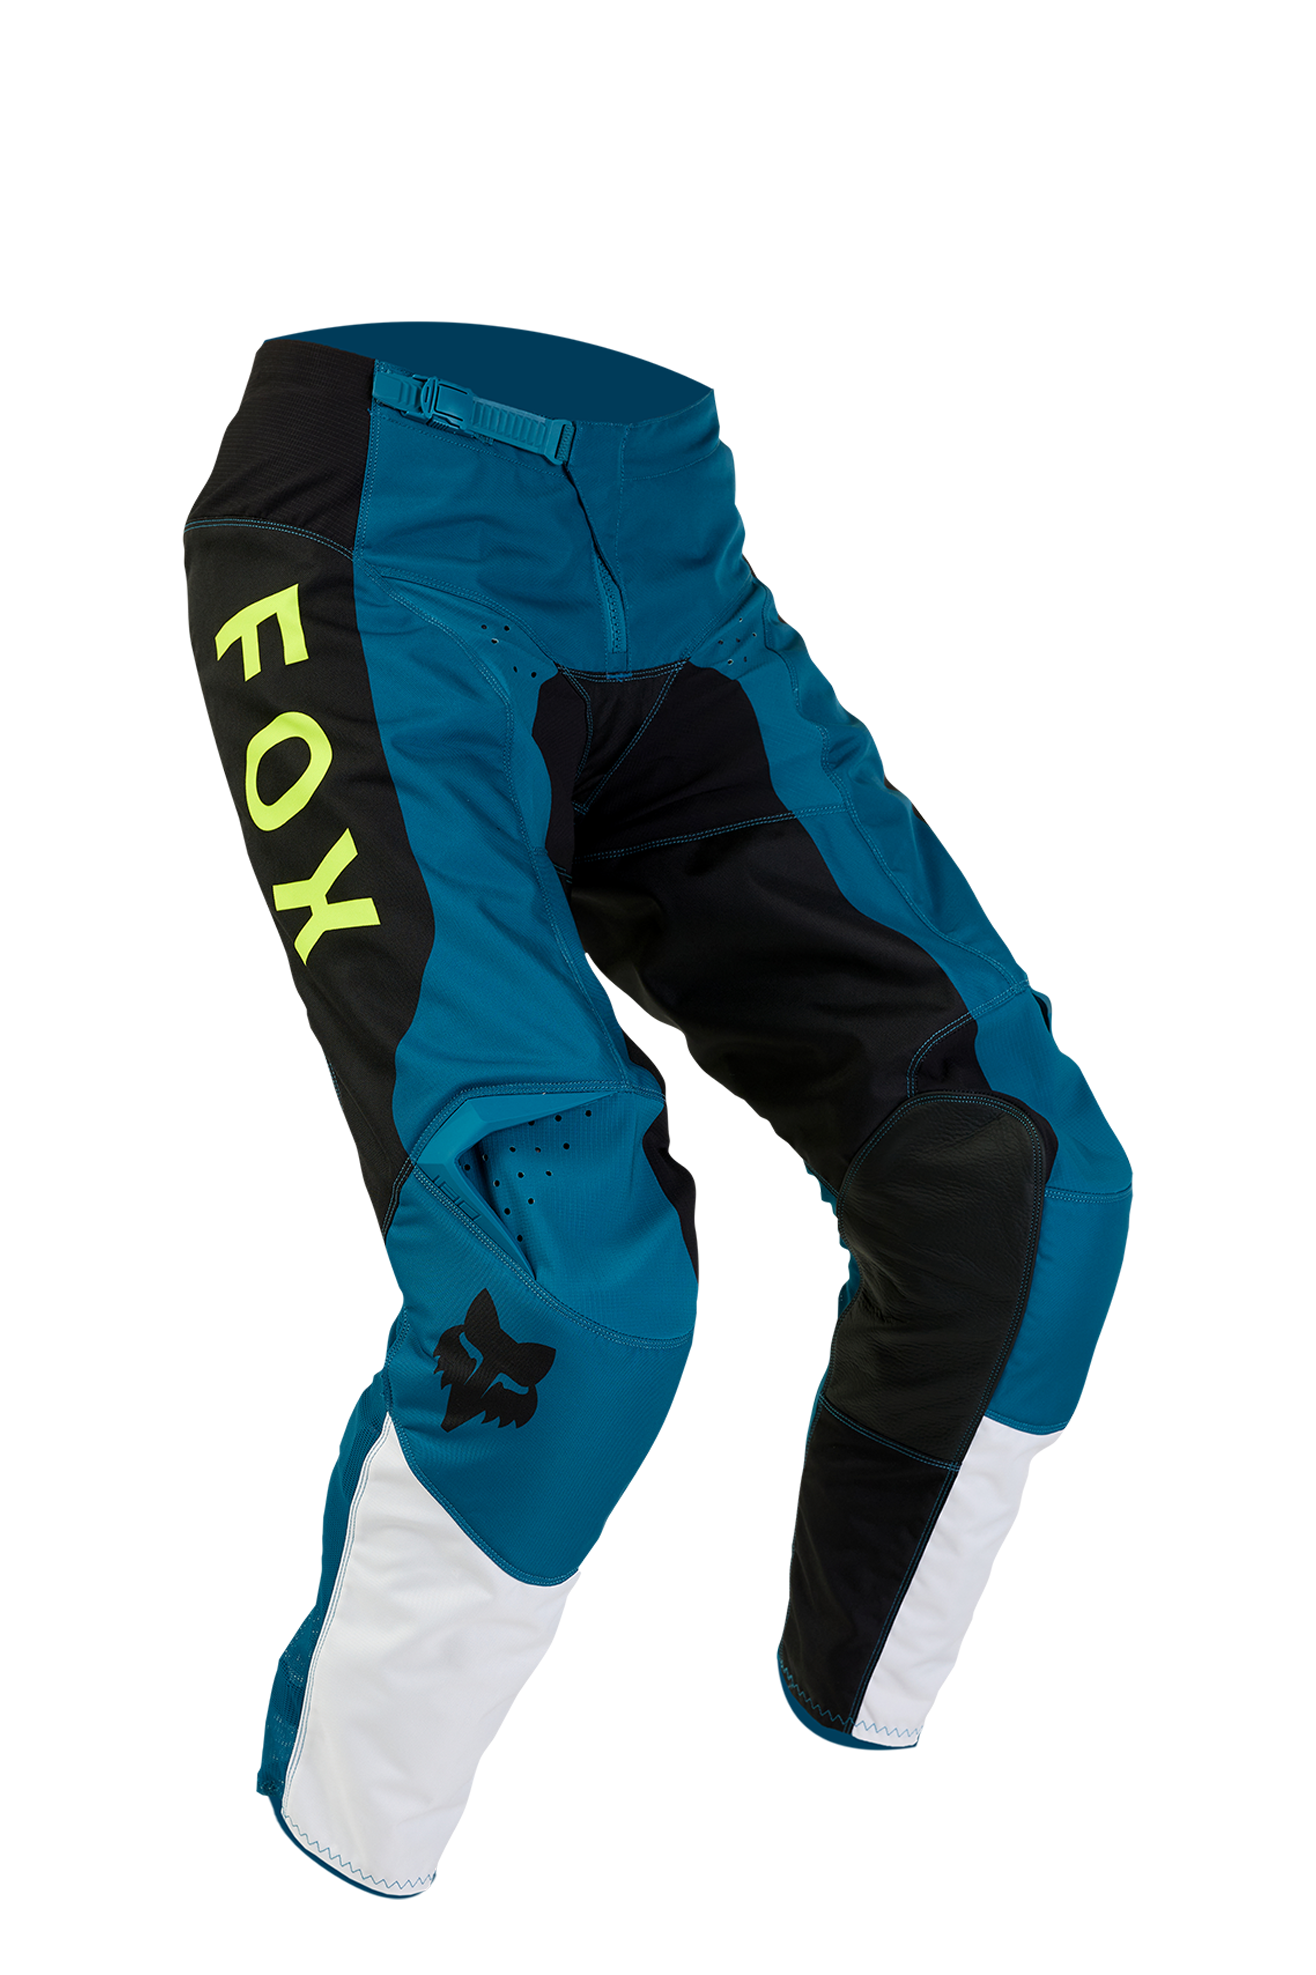 FOX Pantalones de Cross  180 Nitro Azul Maui